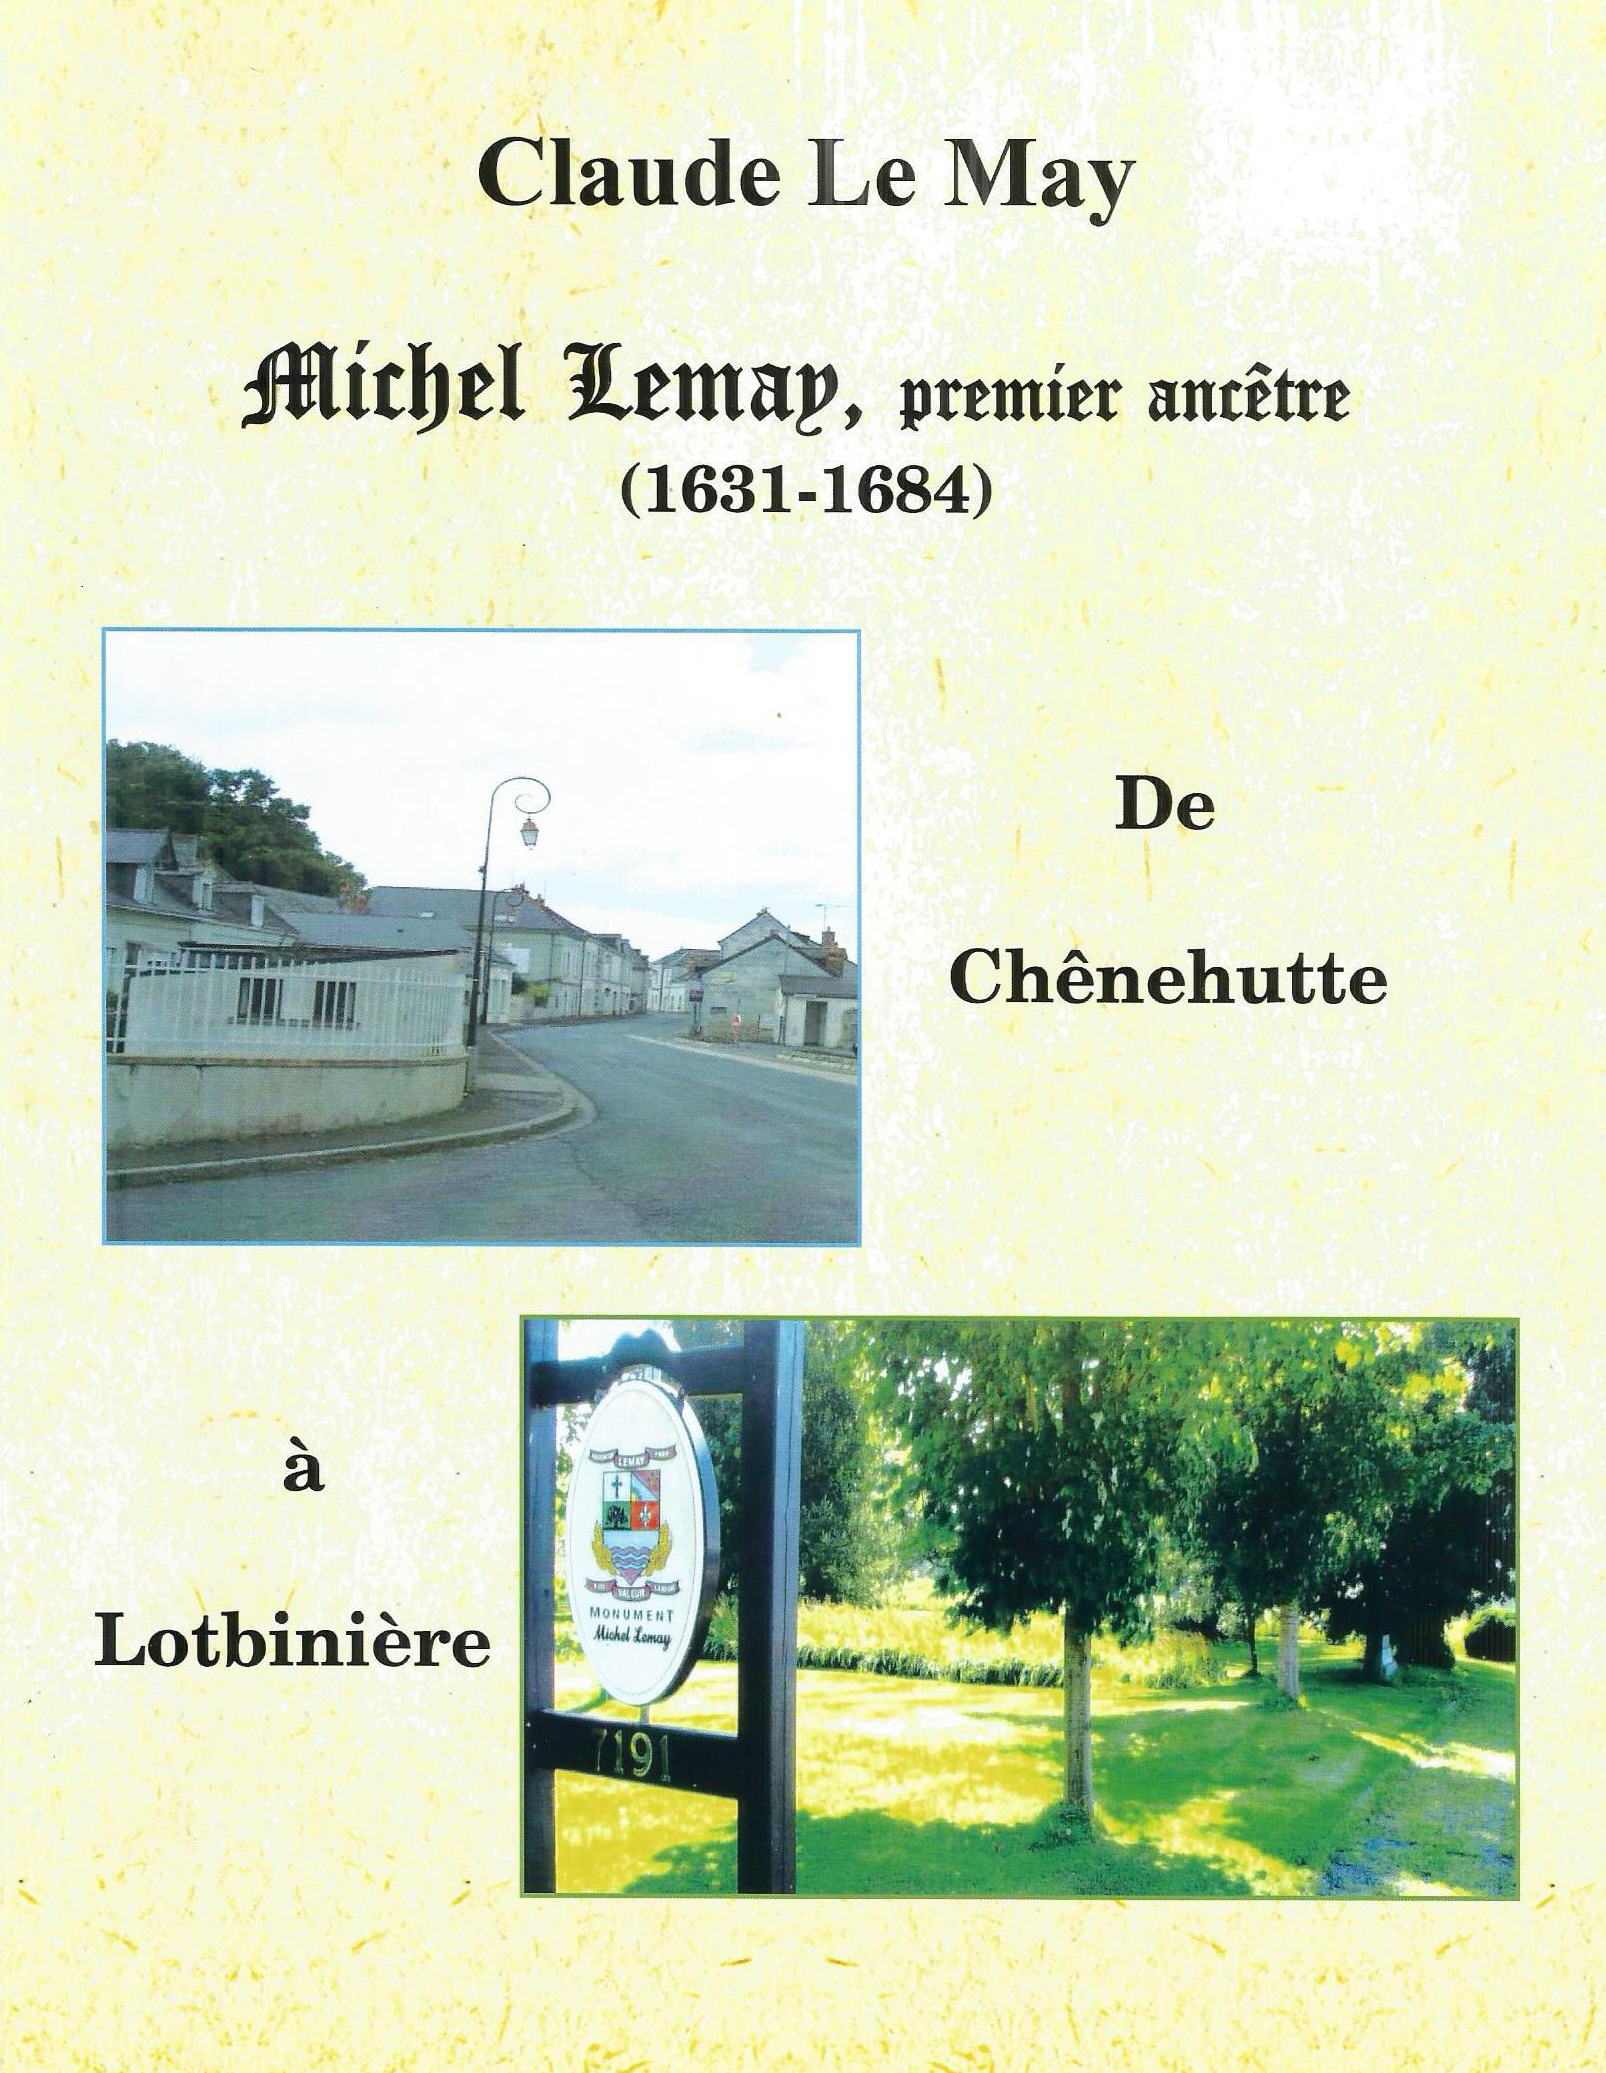 Michel Lemay, premier ancêtre (1631-1684). De Chênehutte à Lotbinière